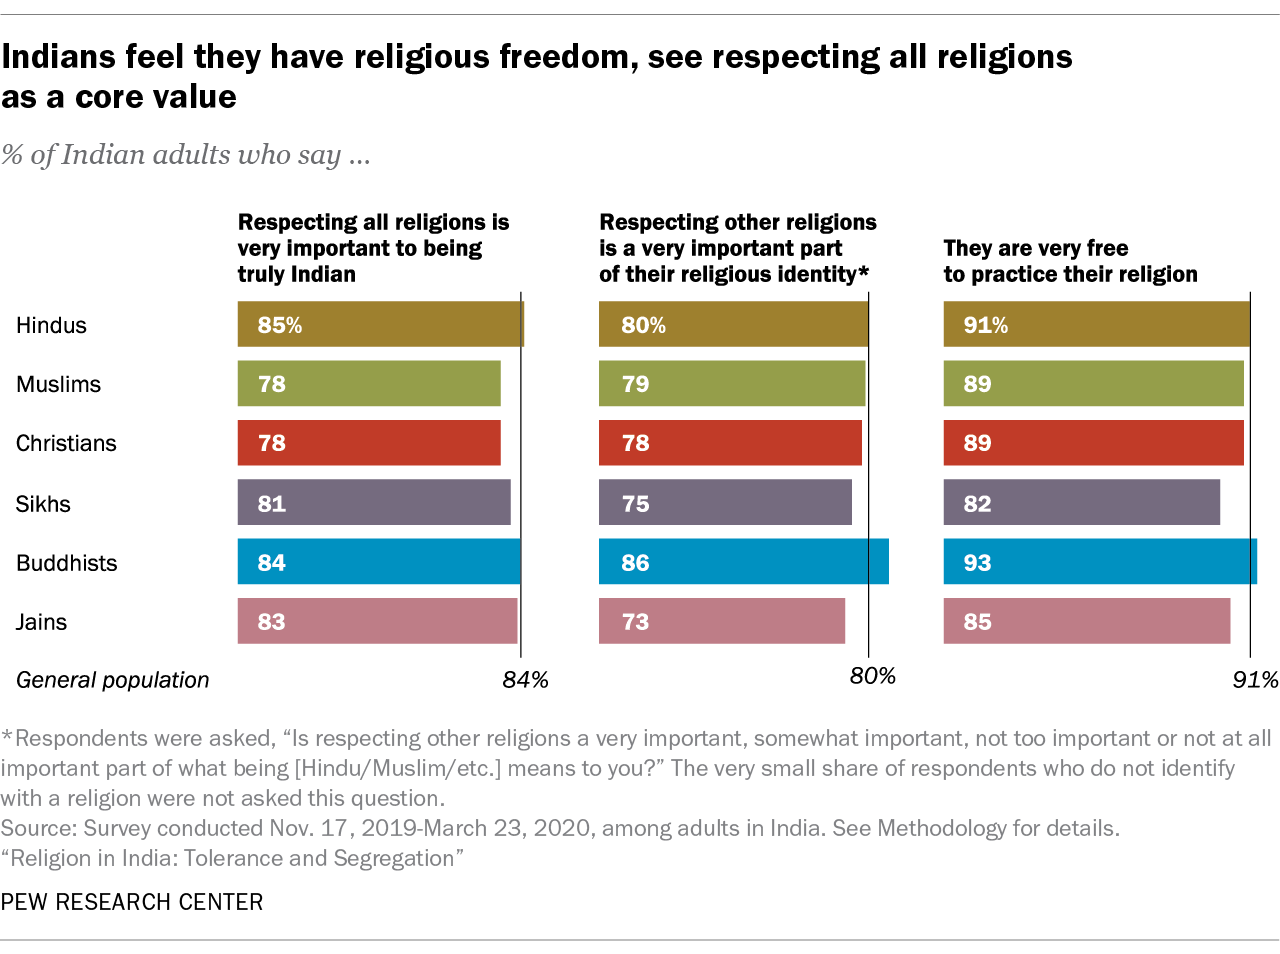 Indiërs vinden dat ze religieuze vrijheid hebben, zien respect voor alle religies als een kernwaarde